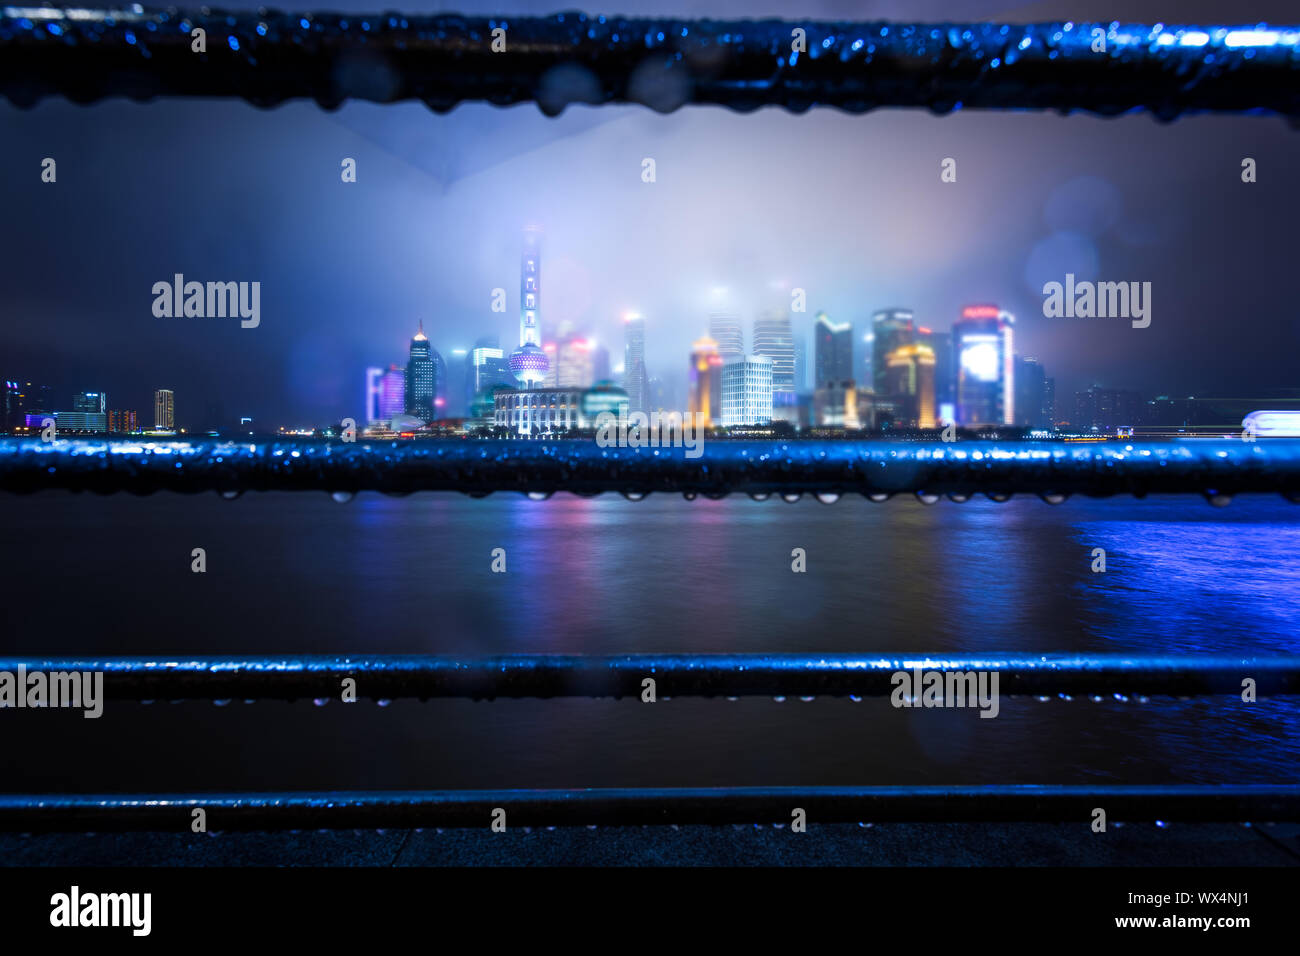 night view at shanghai china Stock Photo